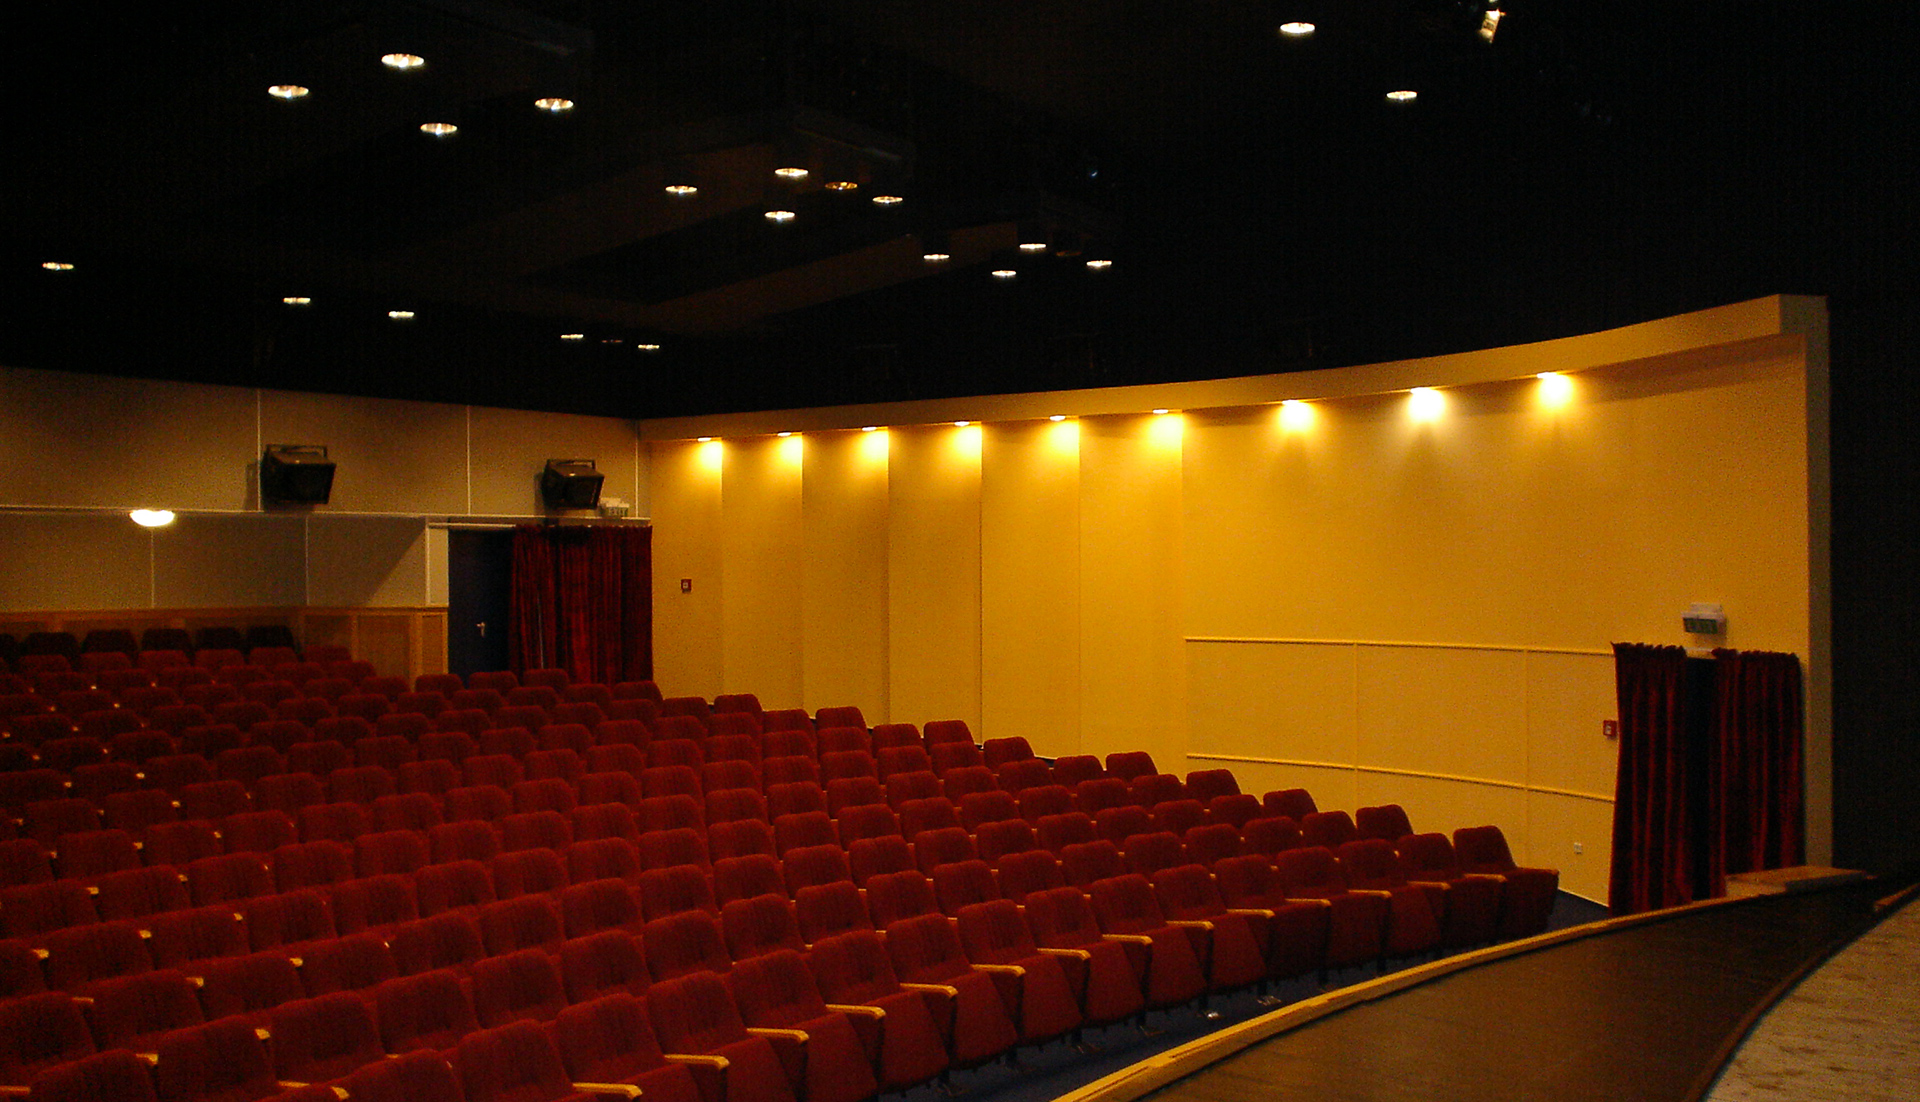 Derkovits Cultural Centre performance hall, Tiszaújváros 2